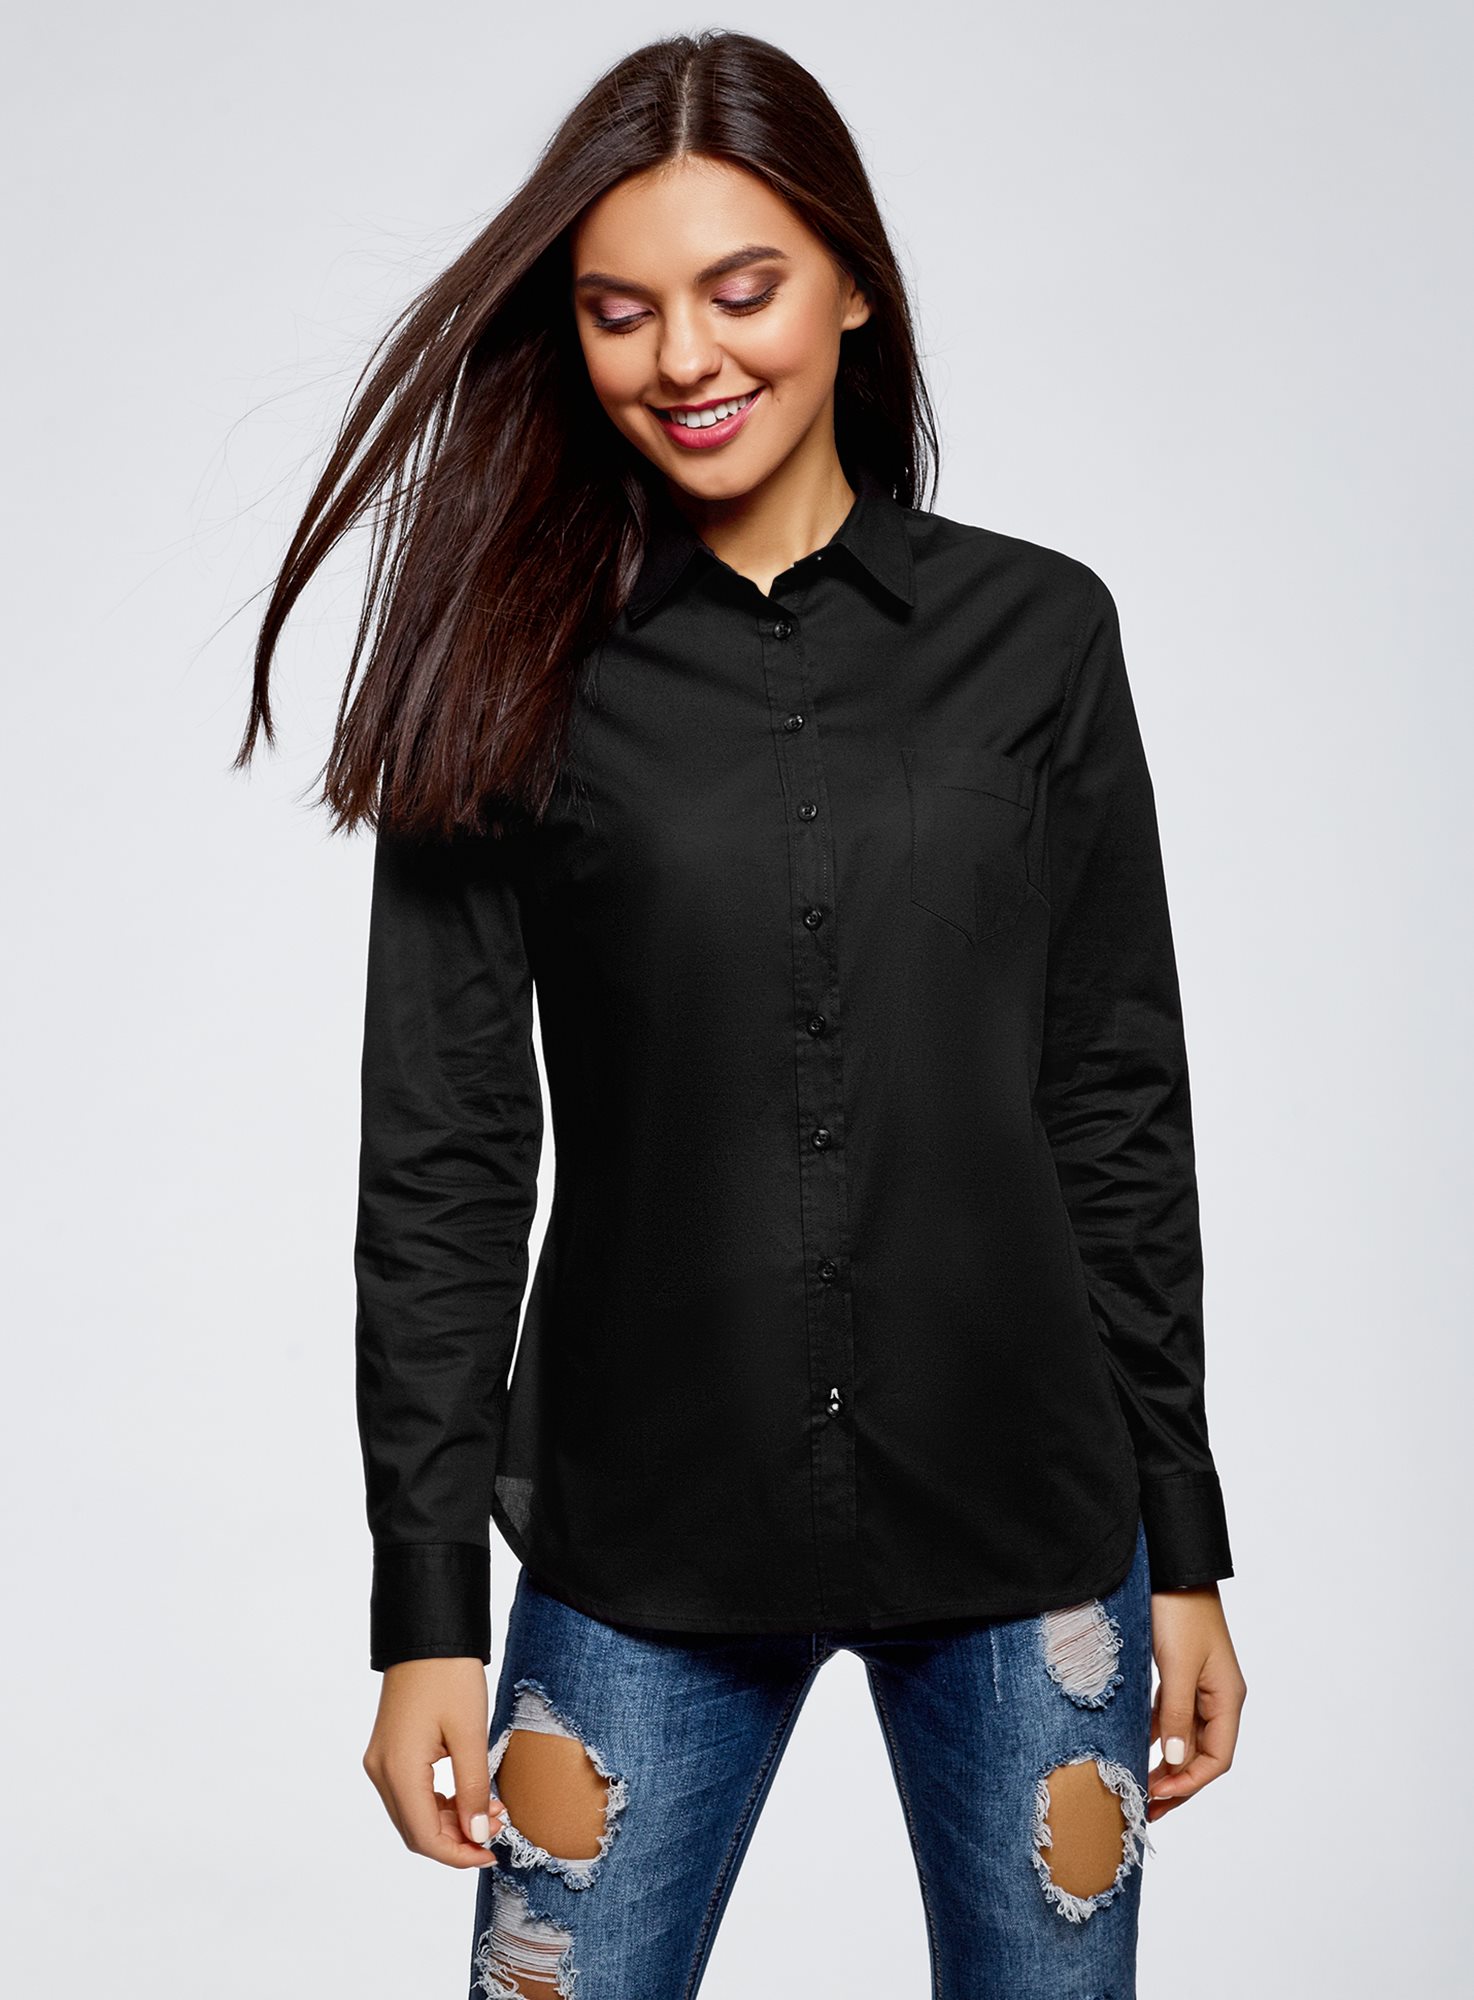 Черная блузка с длинным рукавом. Рубашка Vero Moda черная женская. Черная рубашка. Черная блузка. Чёрная рубашкаженрубашкаженская.